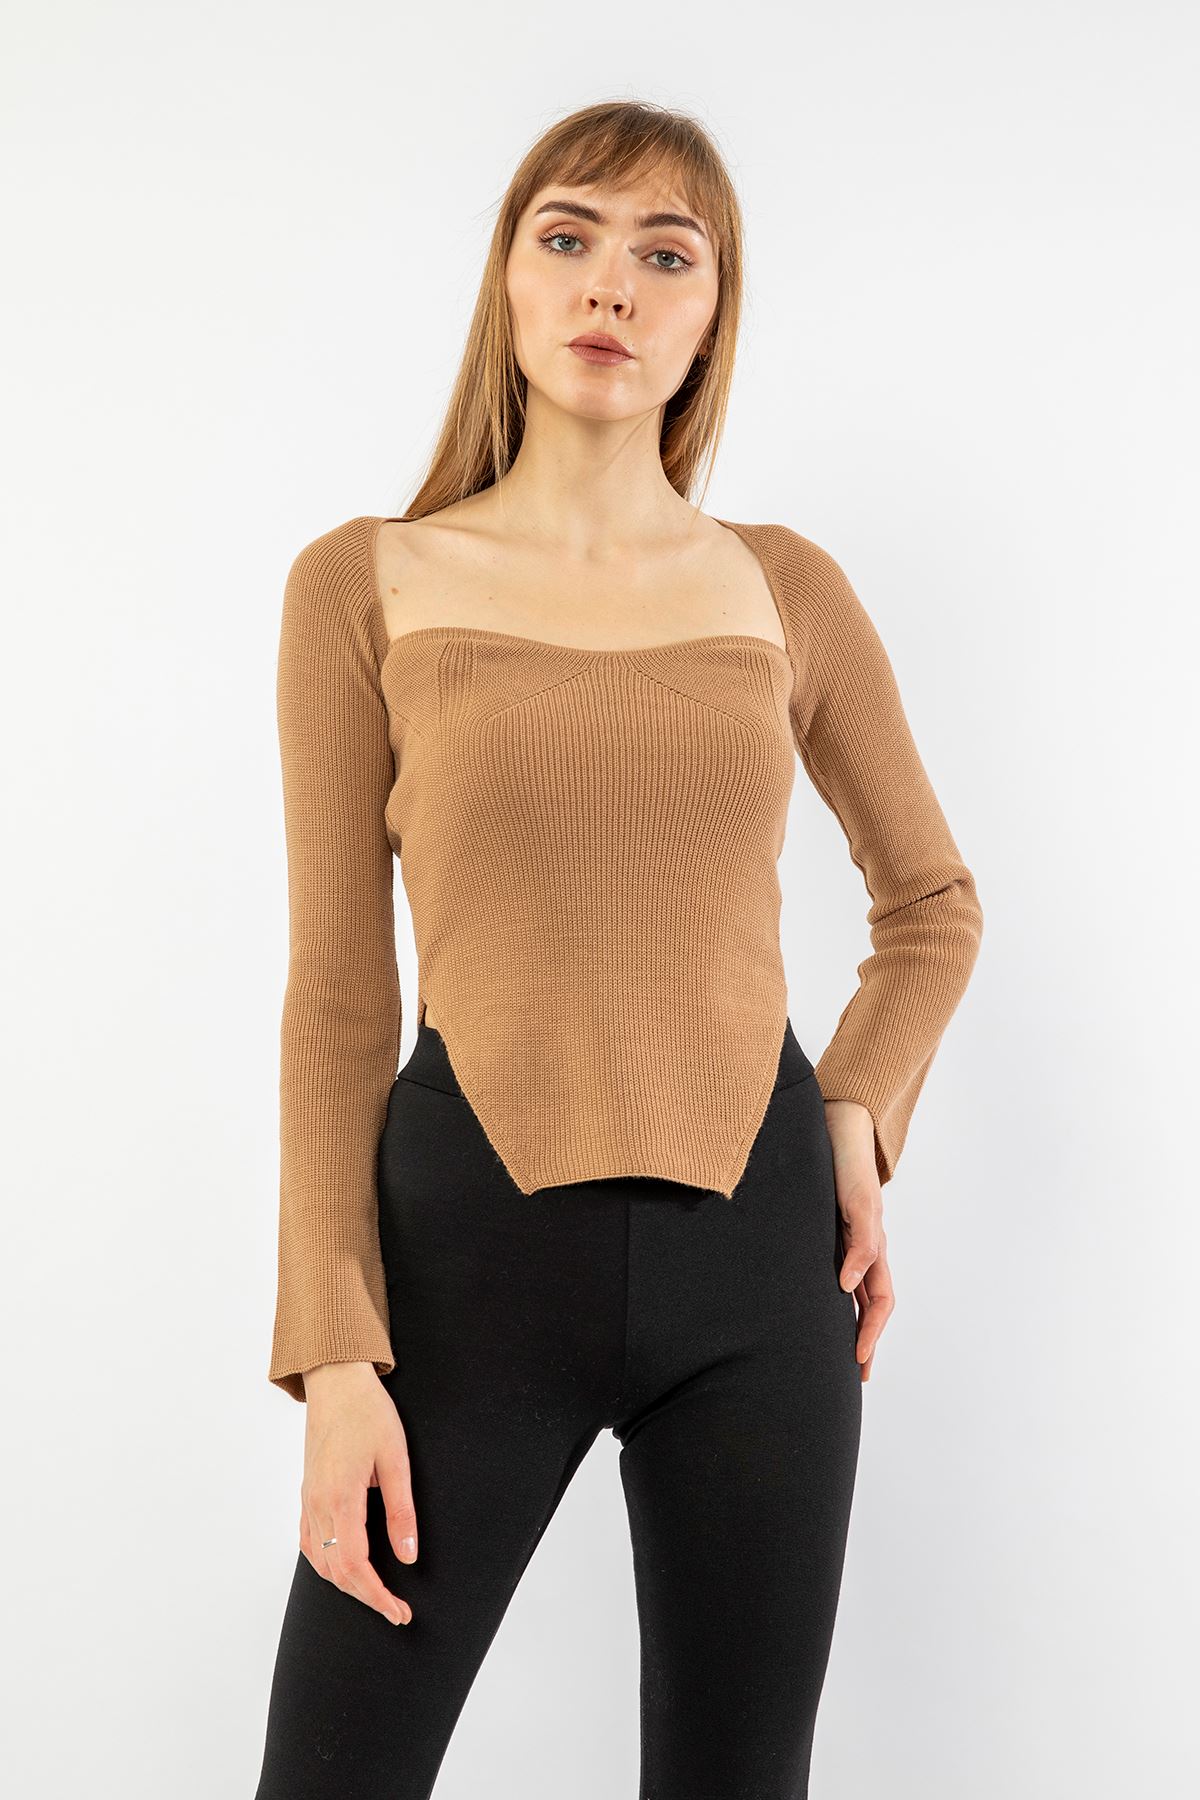 Knitwear Fabric Queen Anna Neck Short Tight Fit Asymmetric Women Sweater - Light Brown